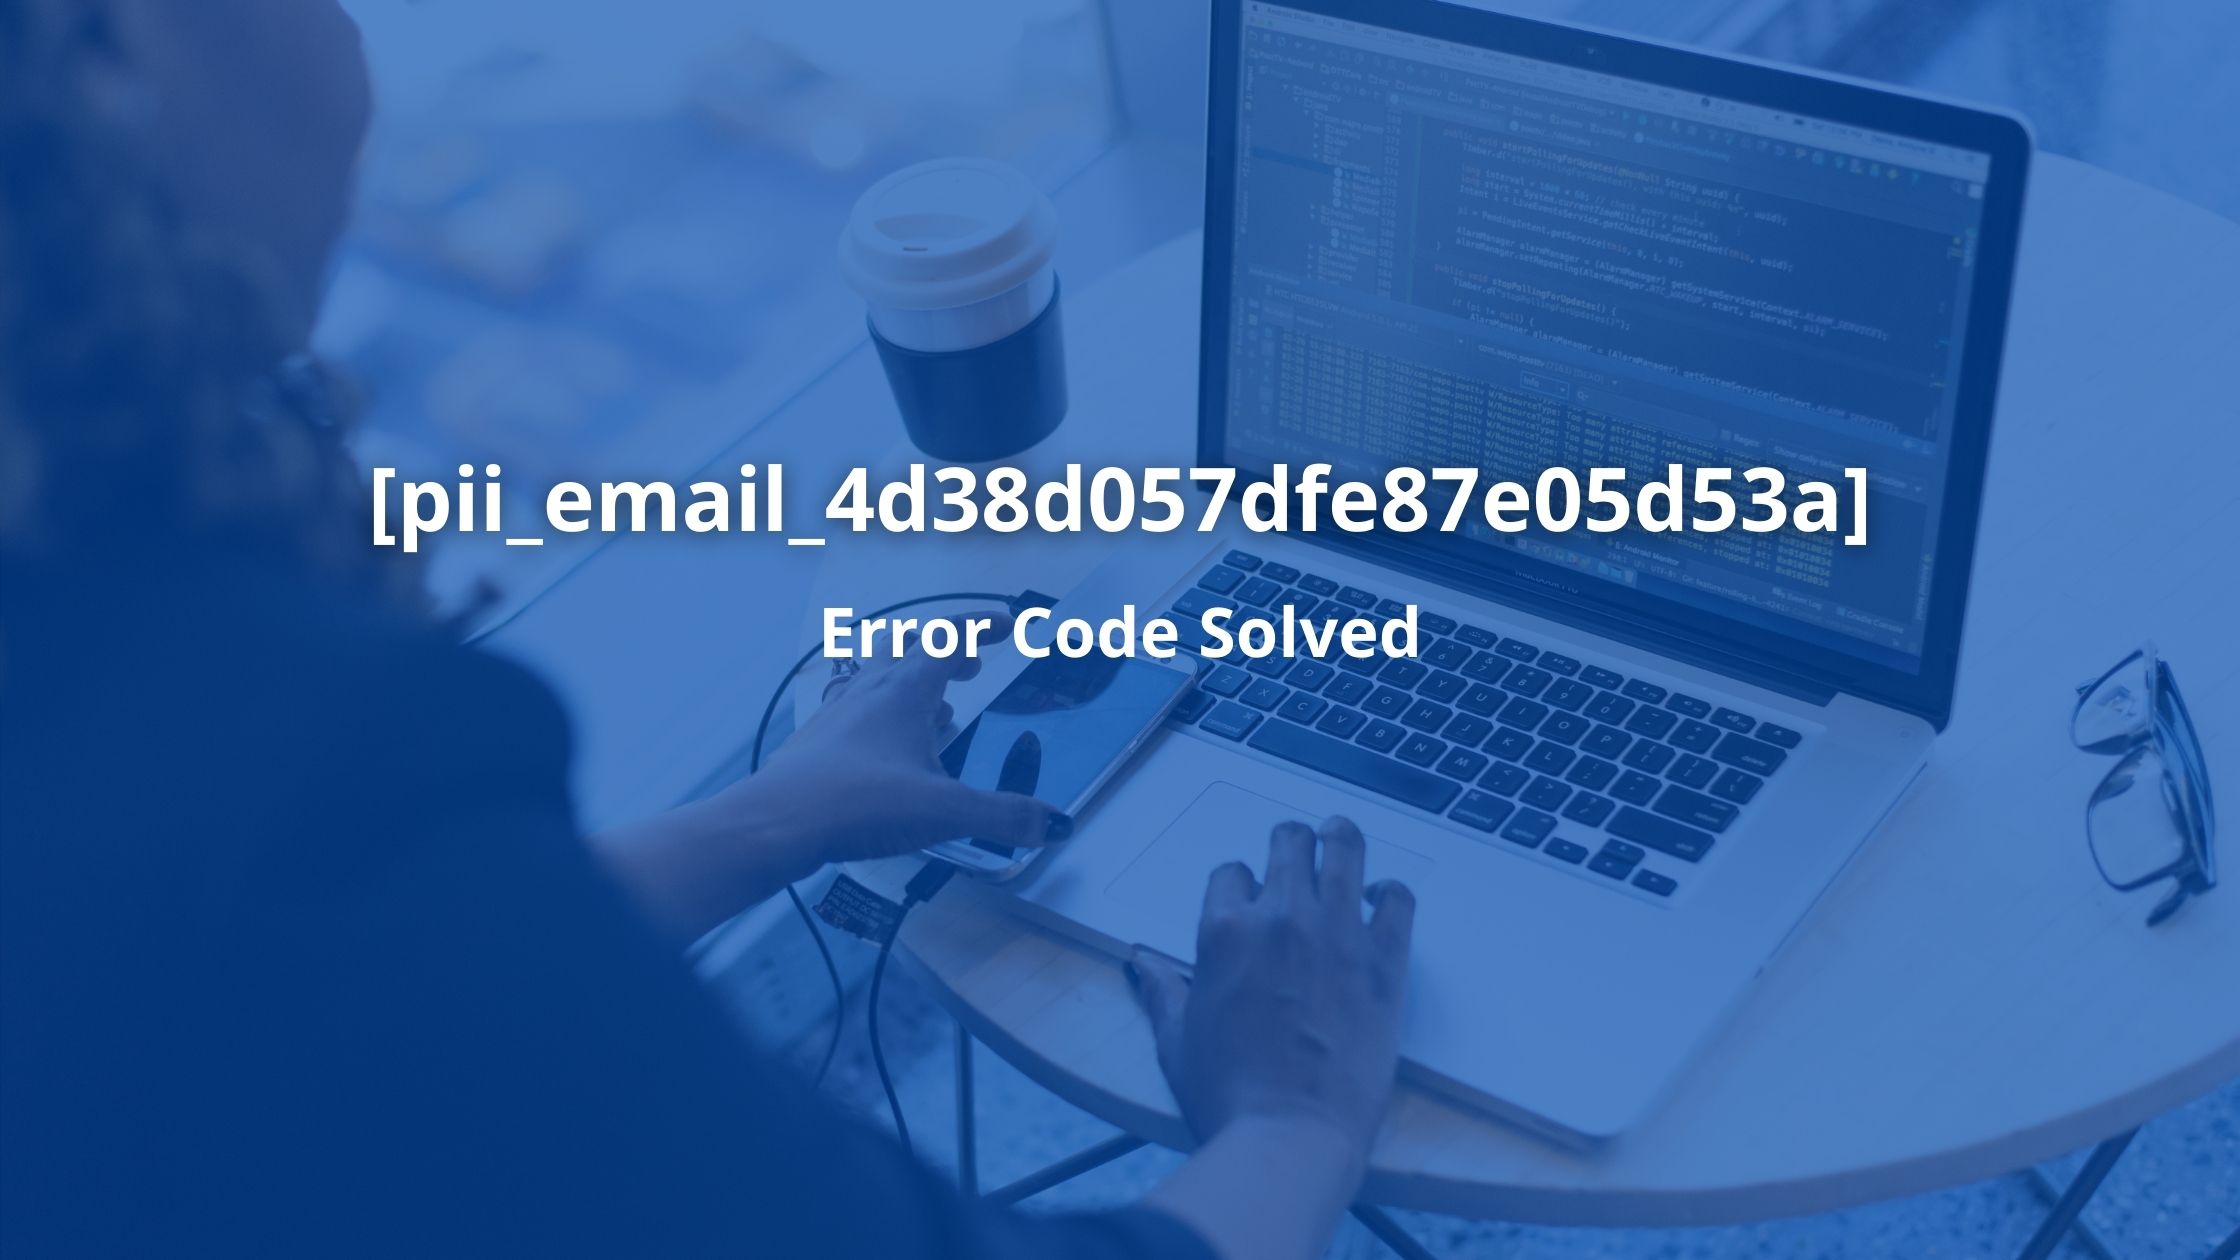 Fix [pii_email_4d38d057dfe87e05d53a] Error Code